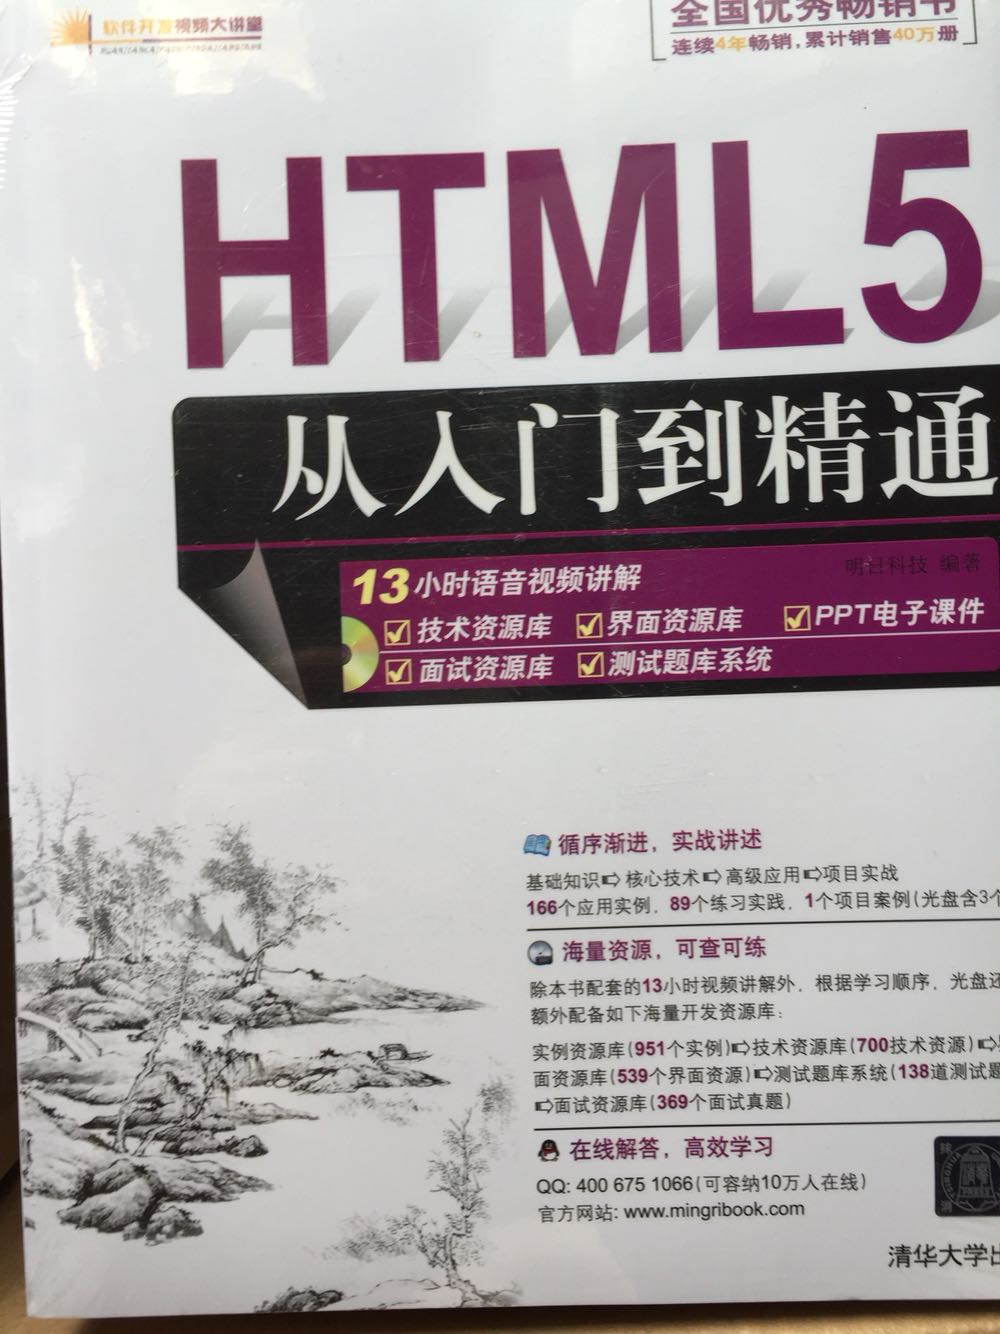 刚开始学HTML5，算是启蒙书，希望浅显易懂，知识点能全面一点。还有，这是一本很大的书